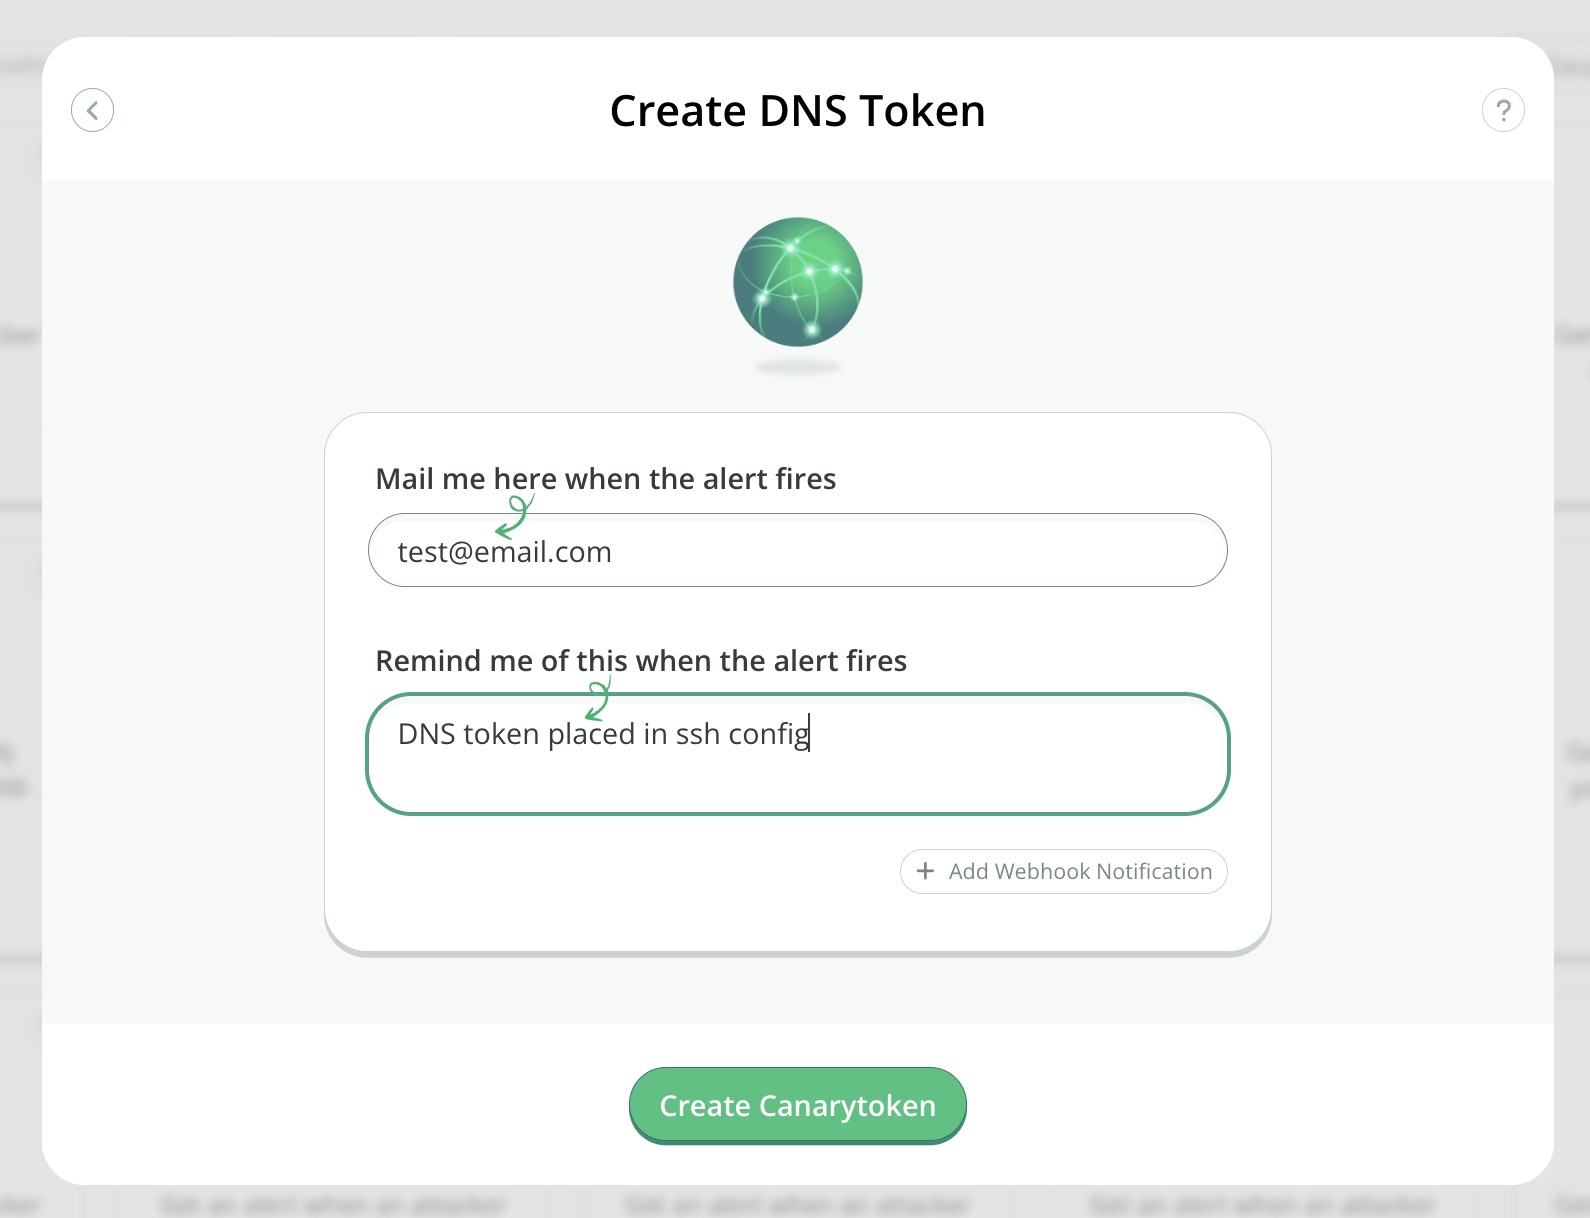 Creating a DNS Canarytoken